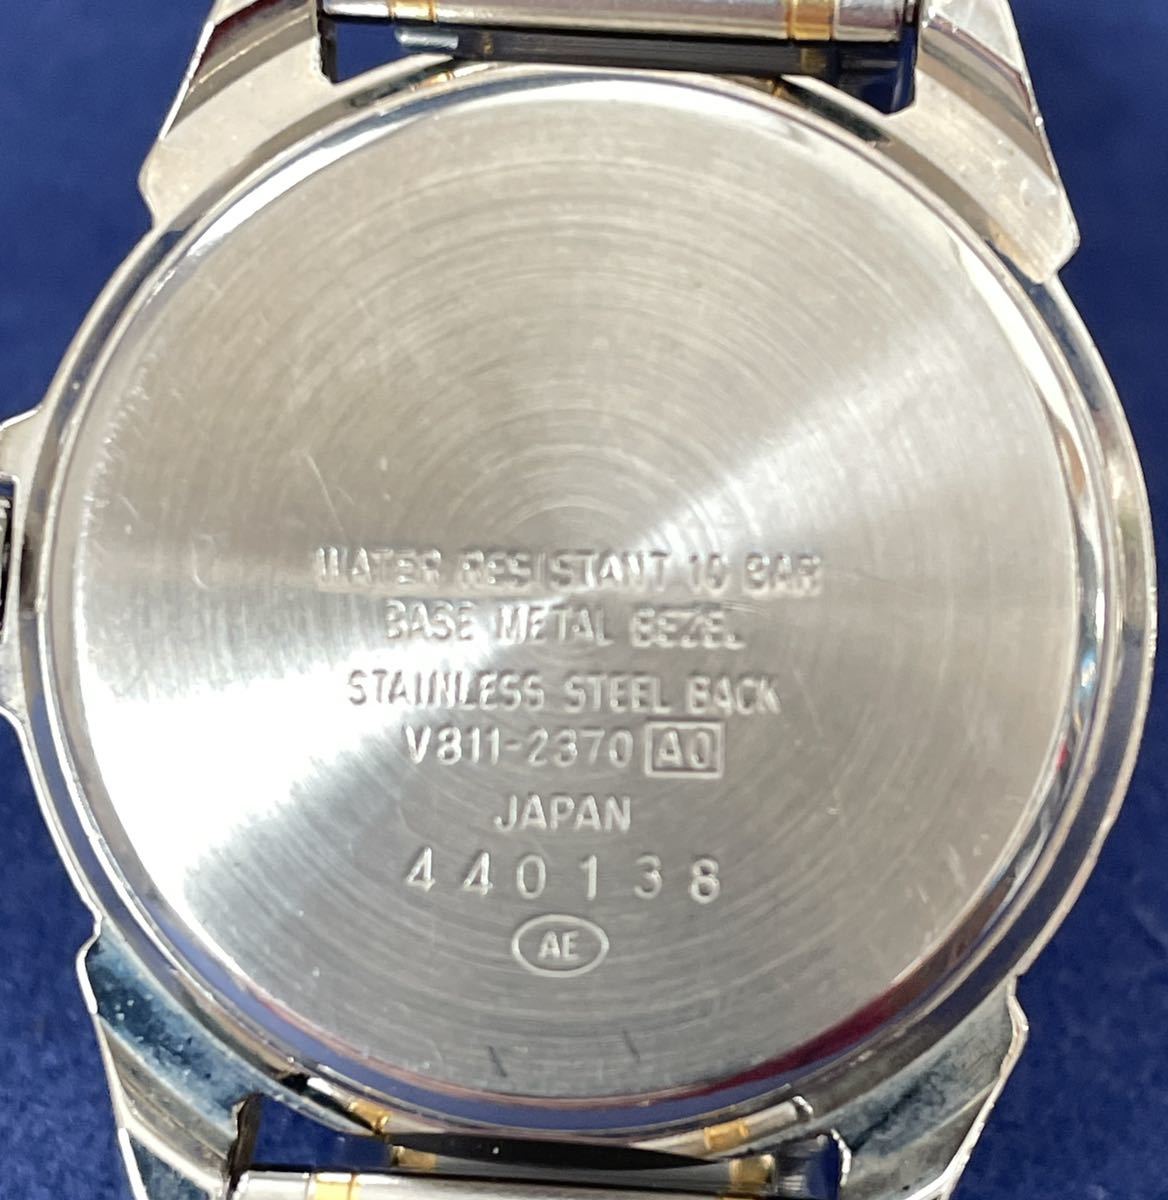 中古腕時計SEIKO ALBA LAGOON セイコー アルバ ラグーン V811-2370 1980年代 ビンテージ (12.8) クォーツ _画像8